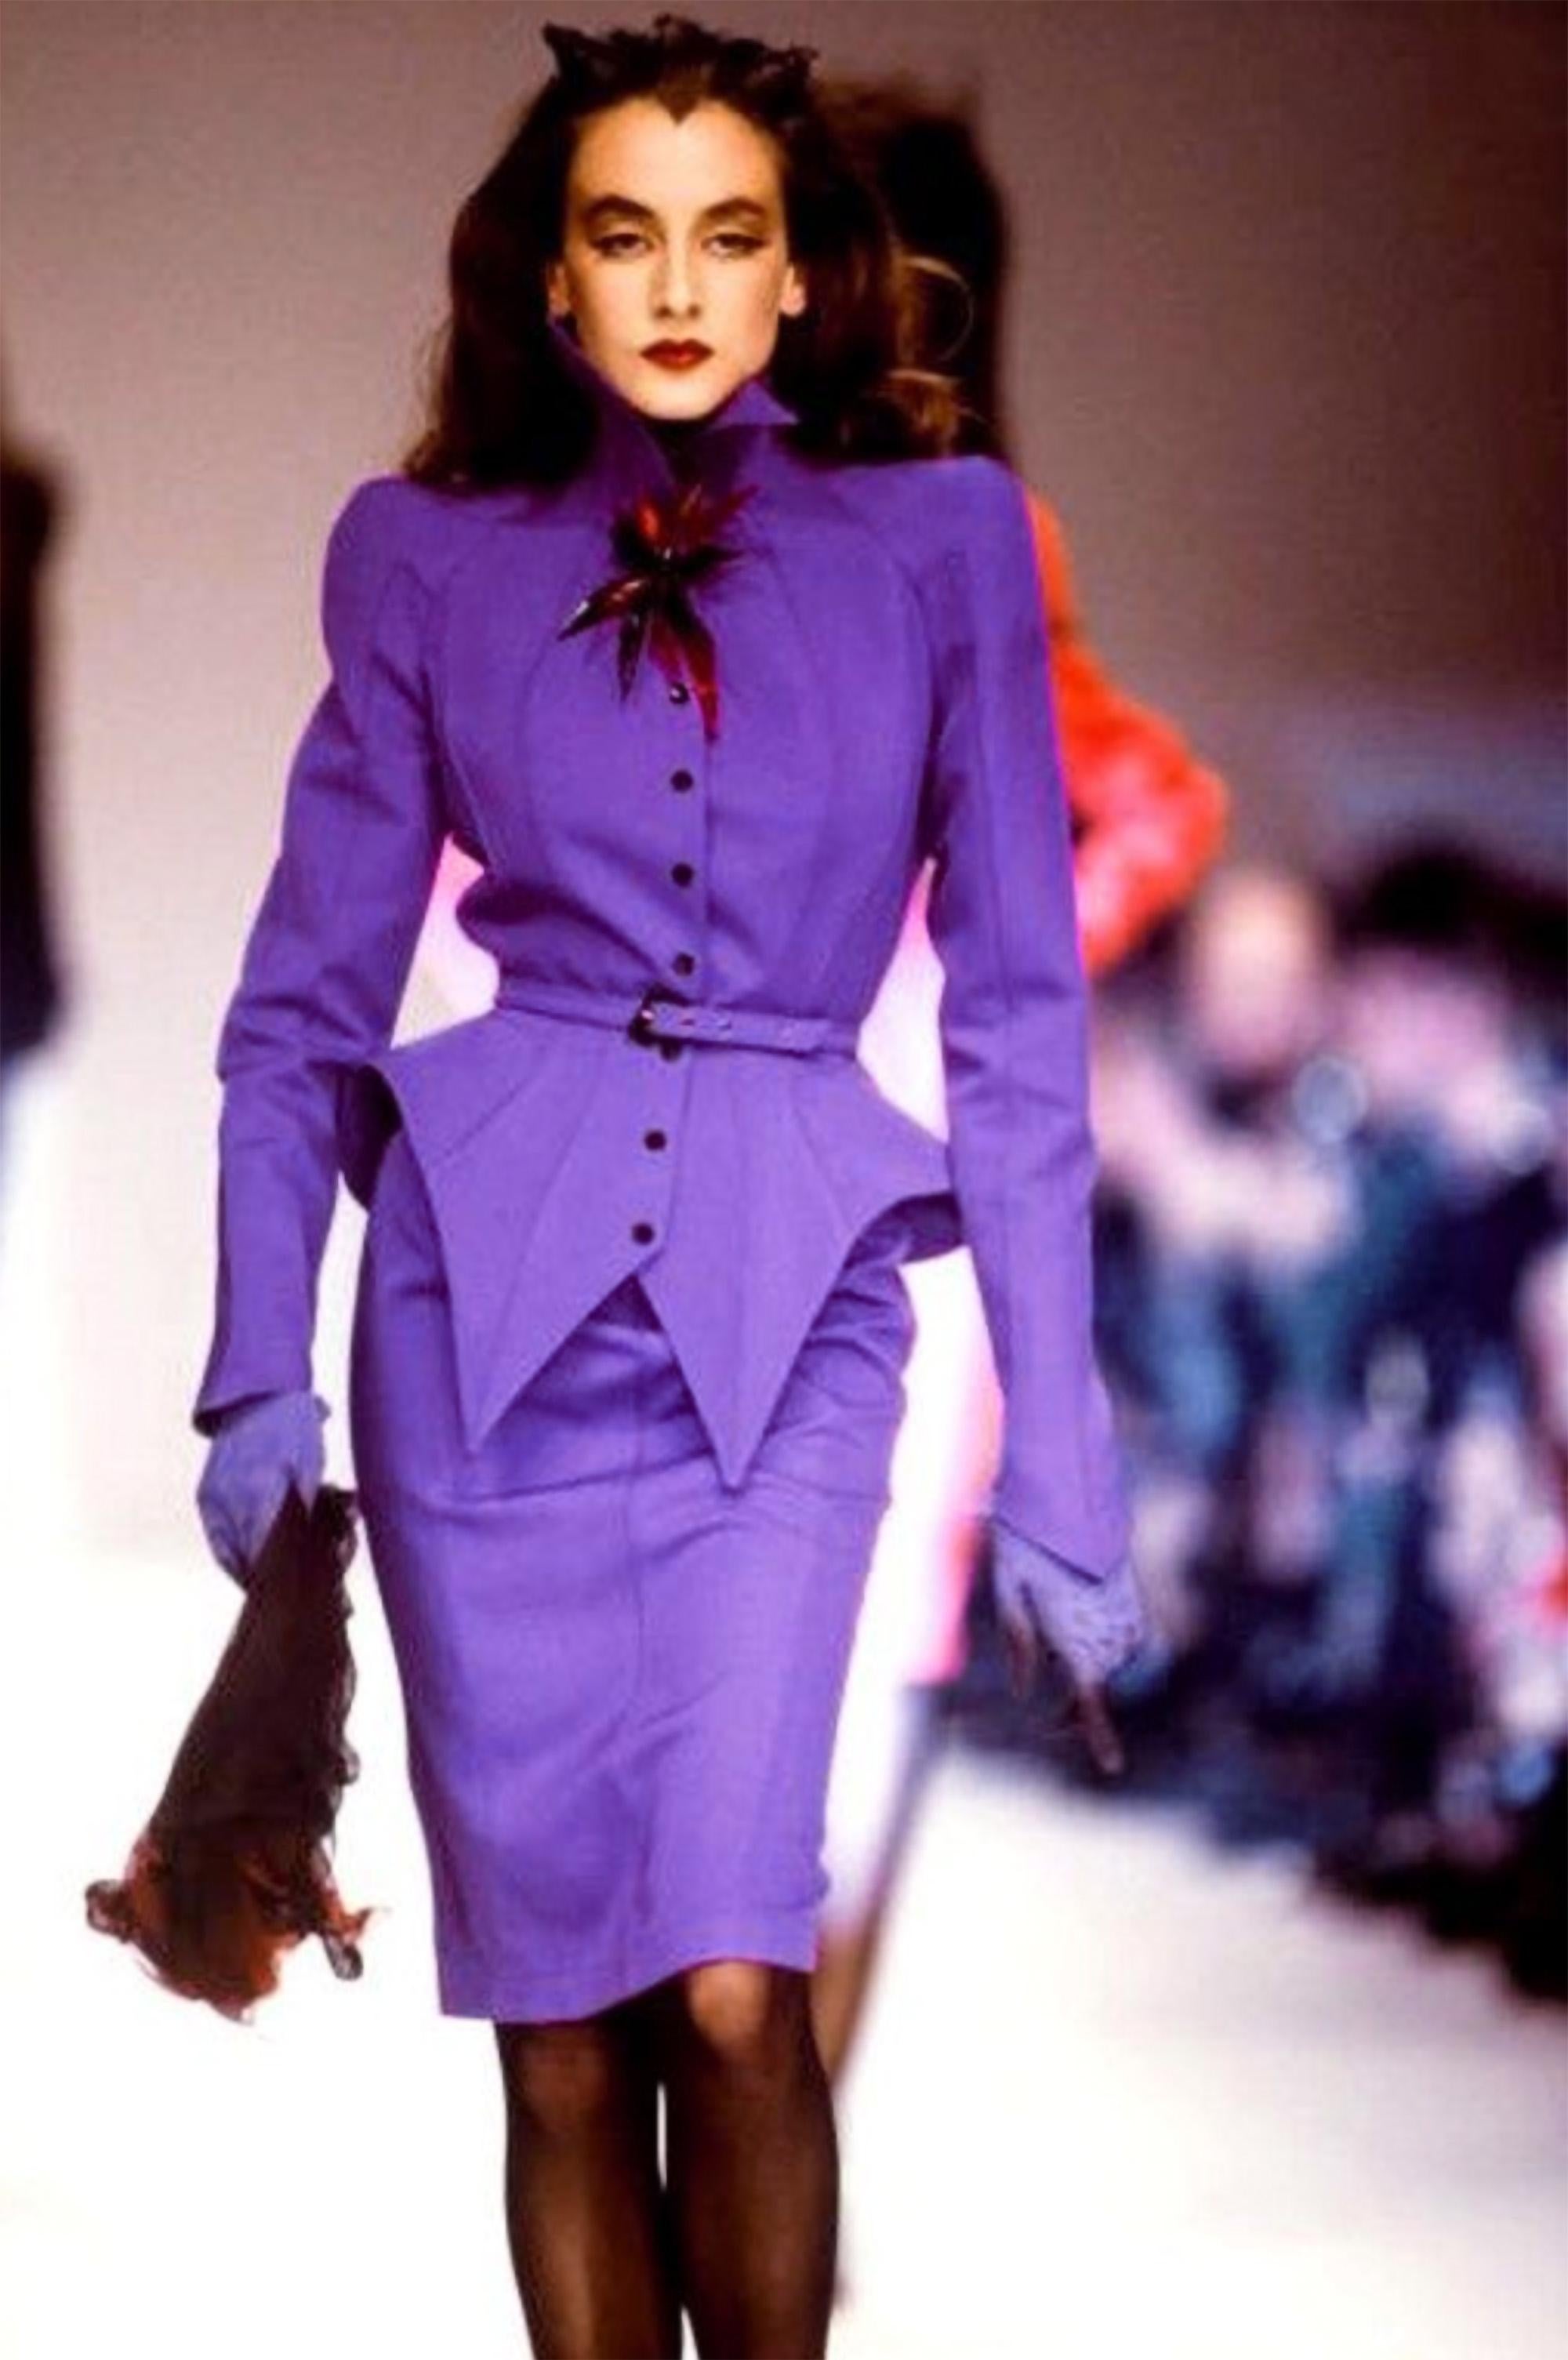 Une pièce d'histoire de la mode digne d'un musée

Le célèbre tailleur jupe violet/violet de la Collection Mugler LES INFERNALES FW 1988/ 1989. Ensemble deux pièces, veste et jupe.
Fantastique pièce oconique signée Thierry Mugler !
Très bien